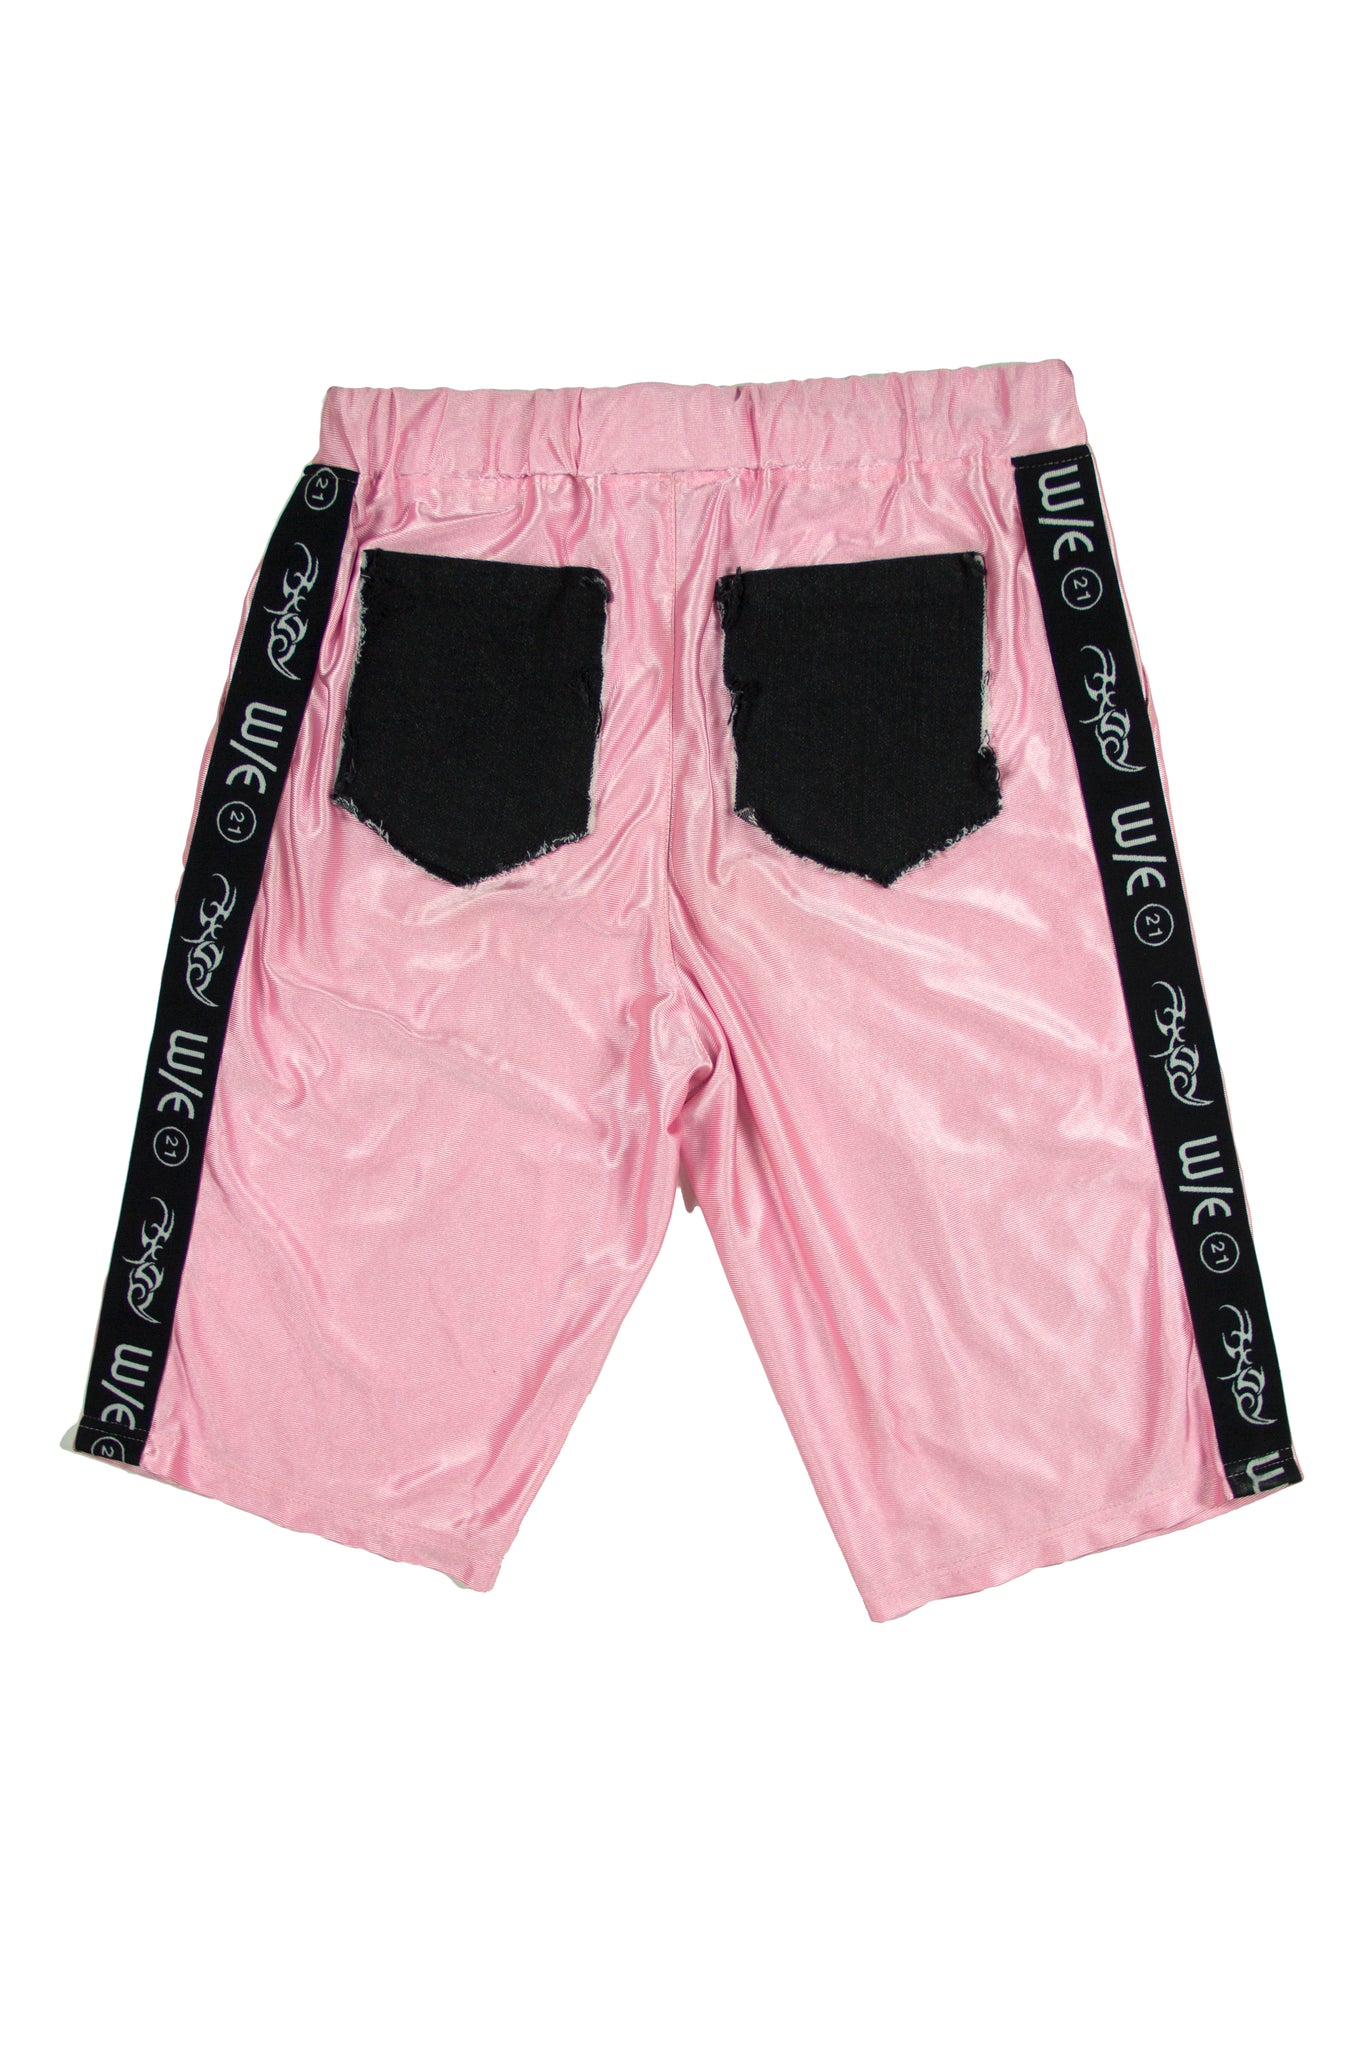 Pink WE21 B-Ball Shorts